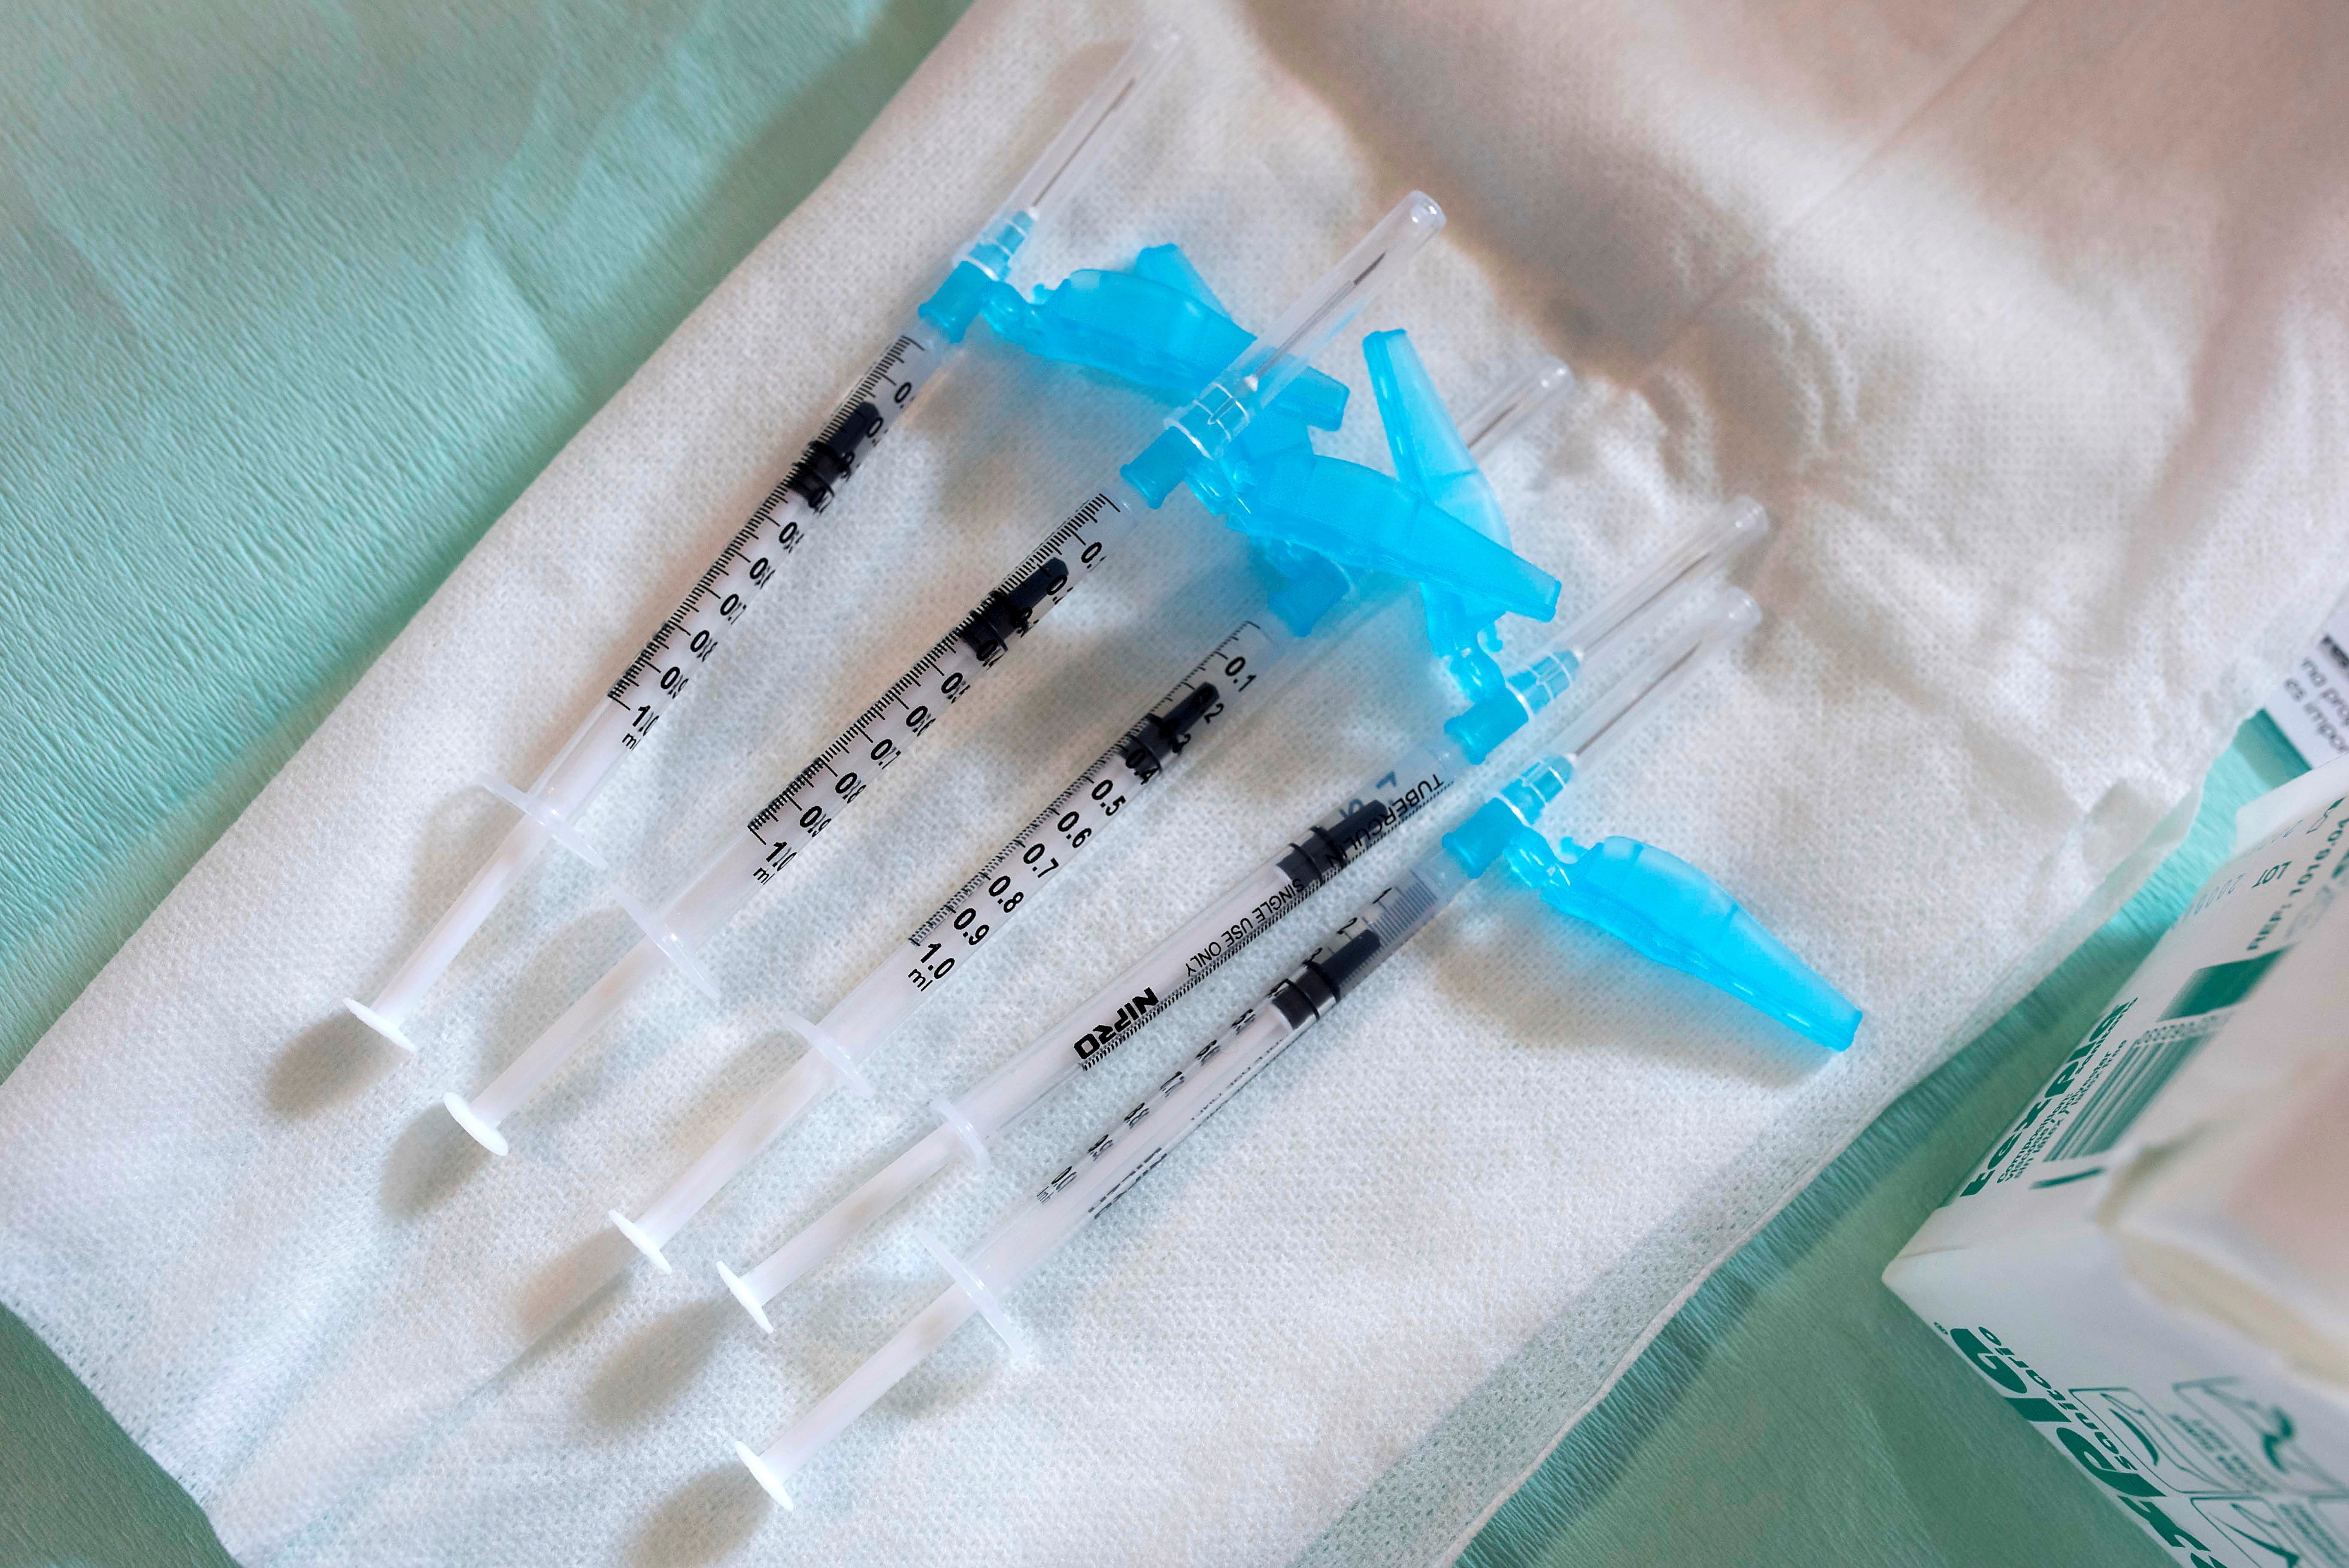 Vista de varias jeringas antes de su uso para inocular una vacuna contra el COVID-19 (EFE/ David Arquimbau Sintes/POOL/Archivo)